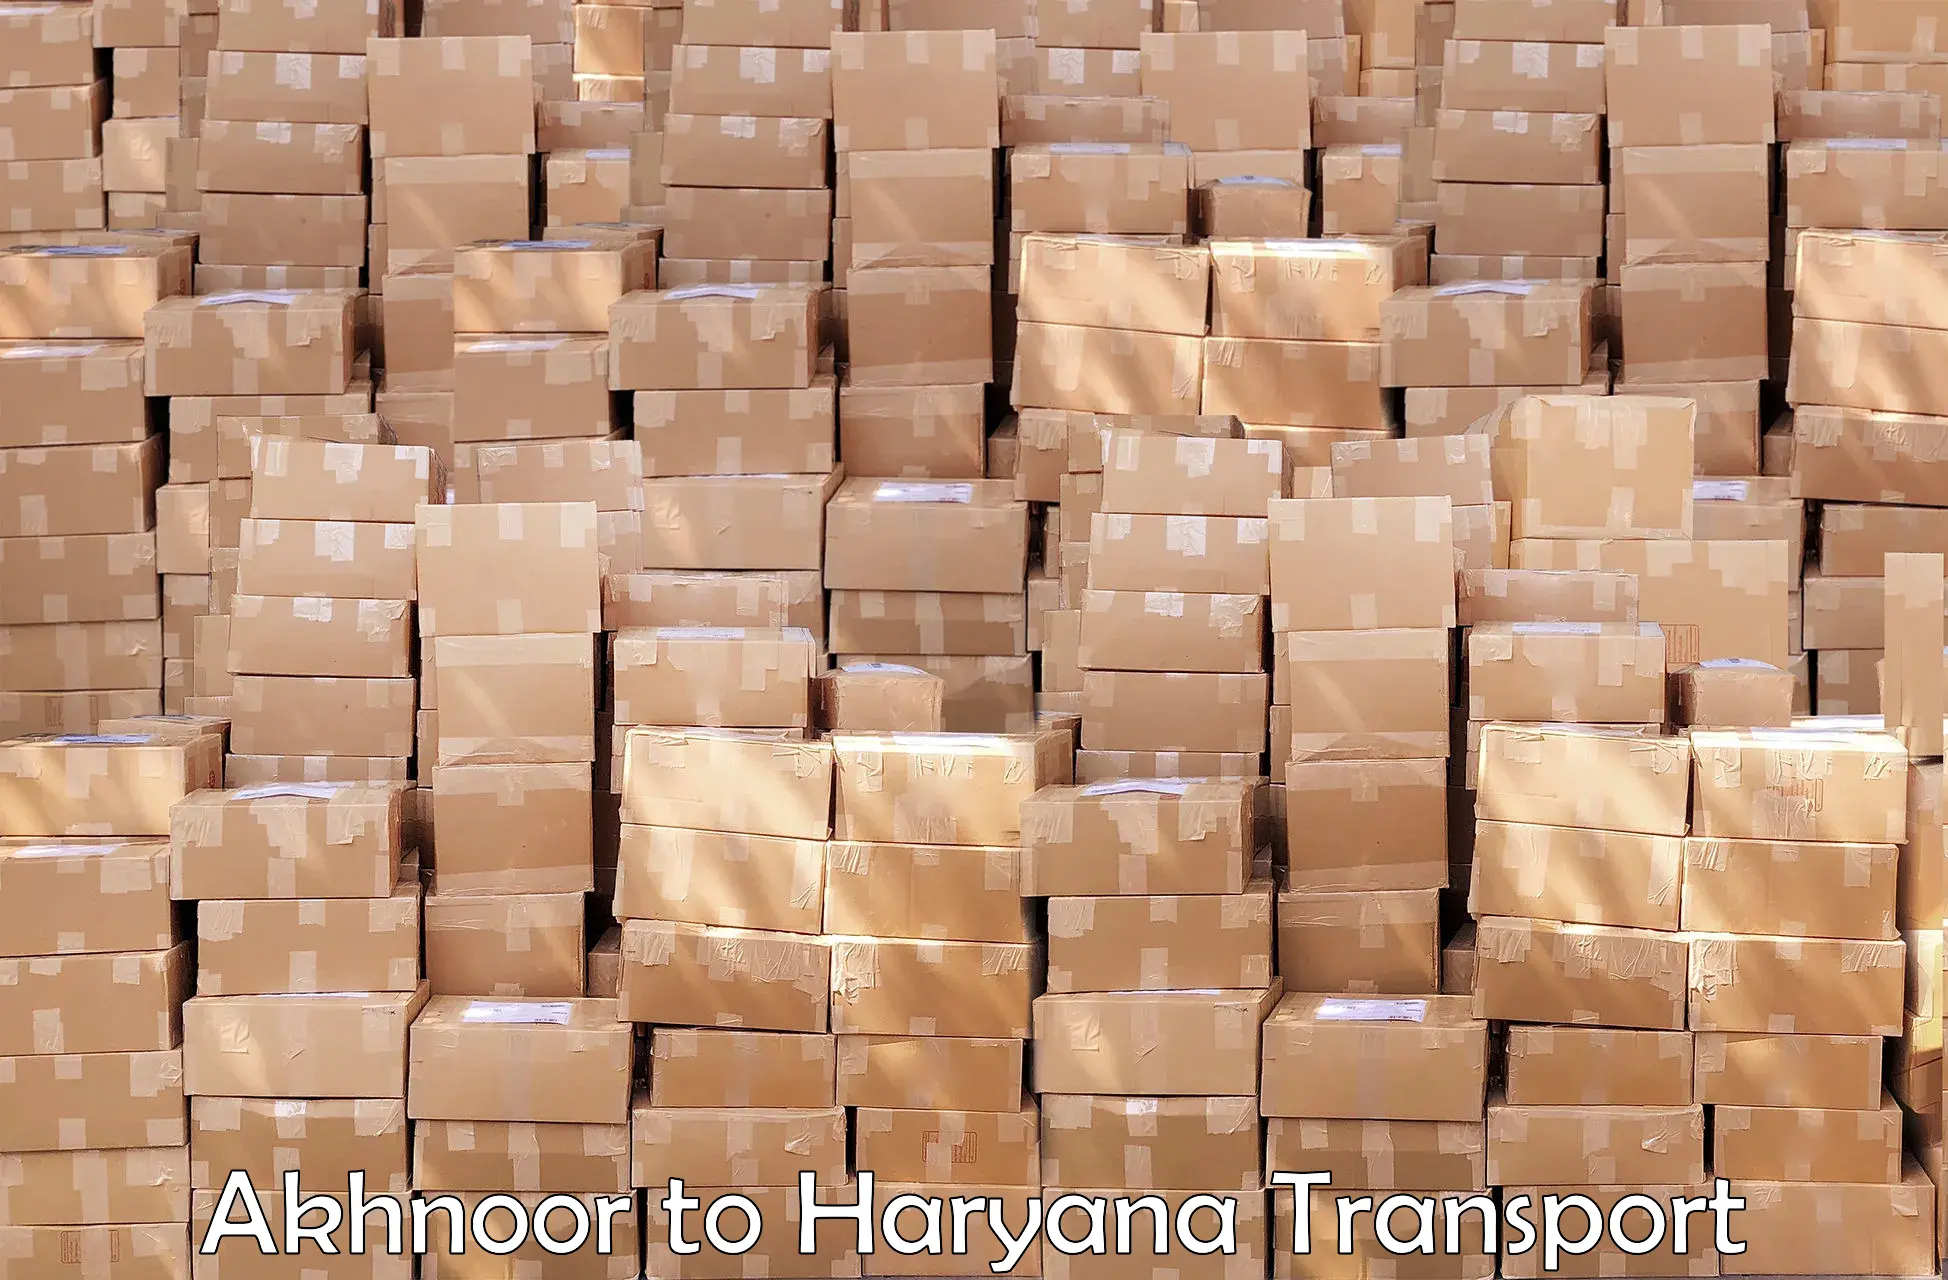 Delivery service Akhnoor to Gurgaon